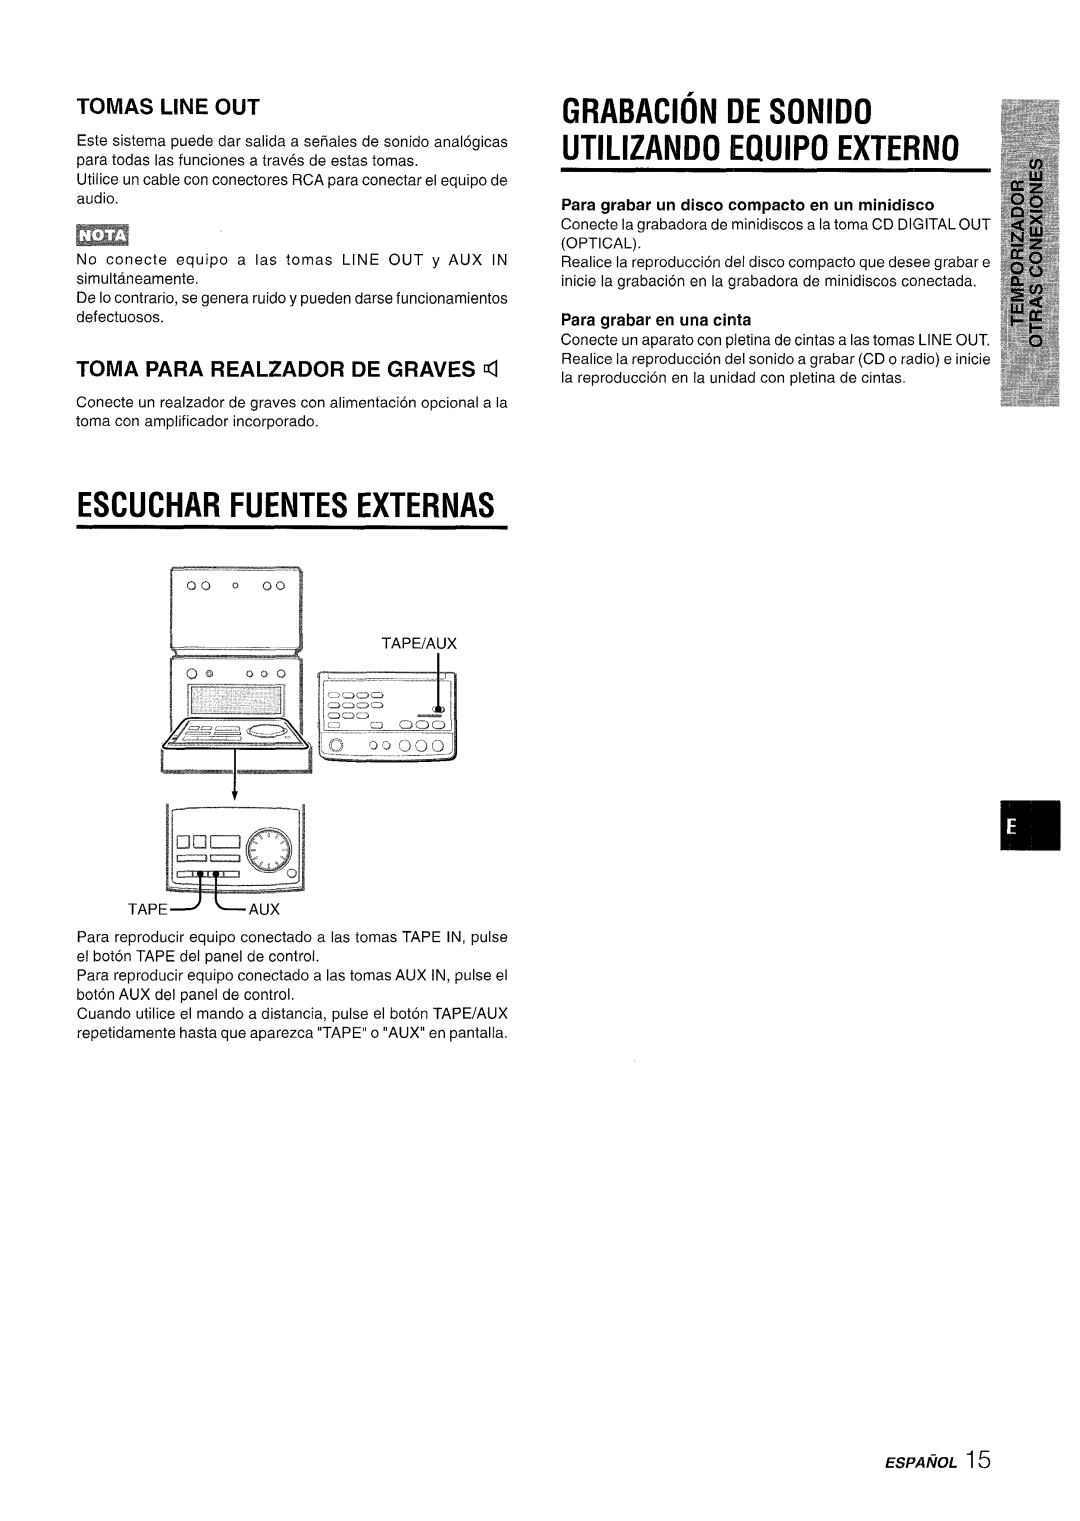 Aiwa XR-M70 manual Escuchar Fuentes Externas, Grabacion De Sonido Utilizando Equipo Externo, ESPAIWL15, Tomas Line Out 